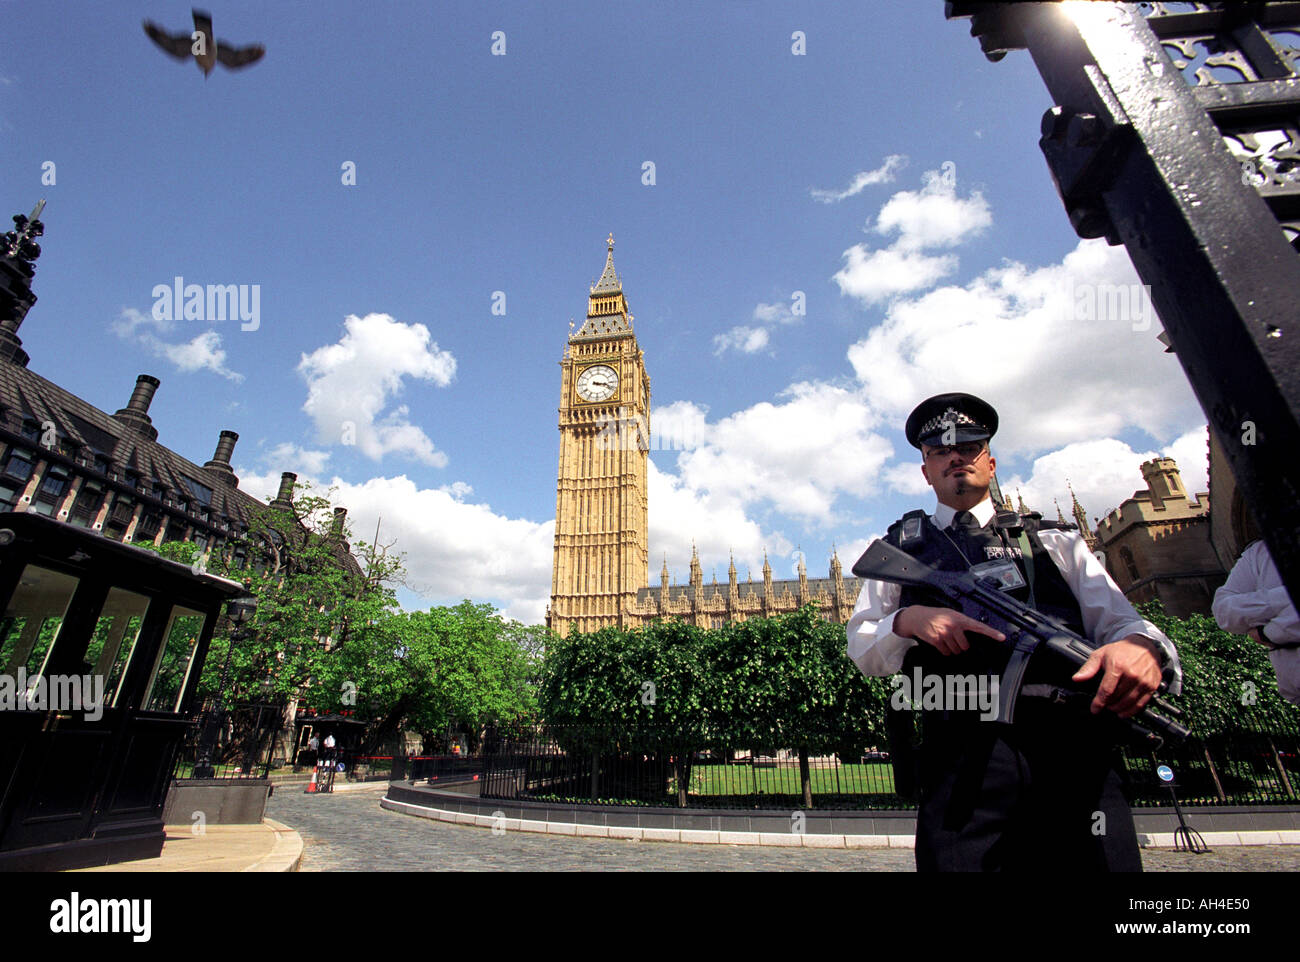 Un agent de police armés devant les Maisons du Parlement montrant Big Ben à Londres, Angleterre, Royaume-Uni Banque D'Images